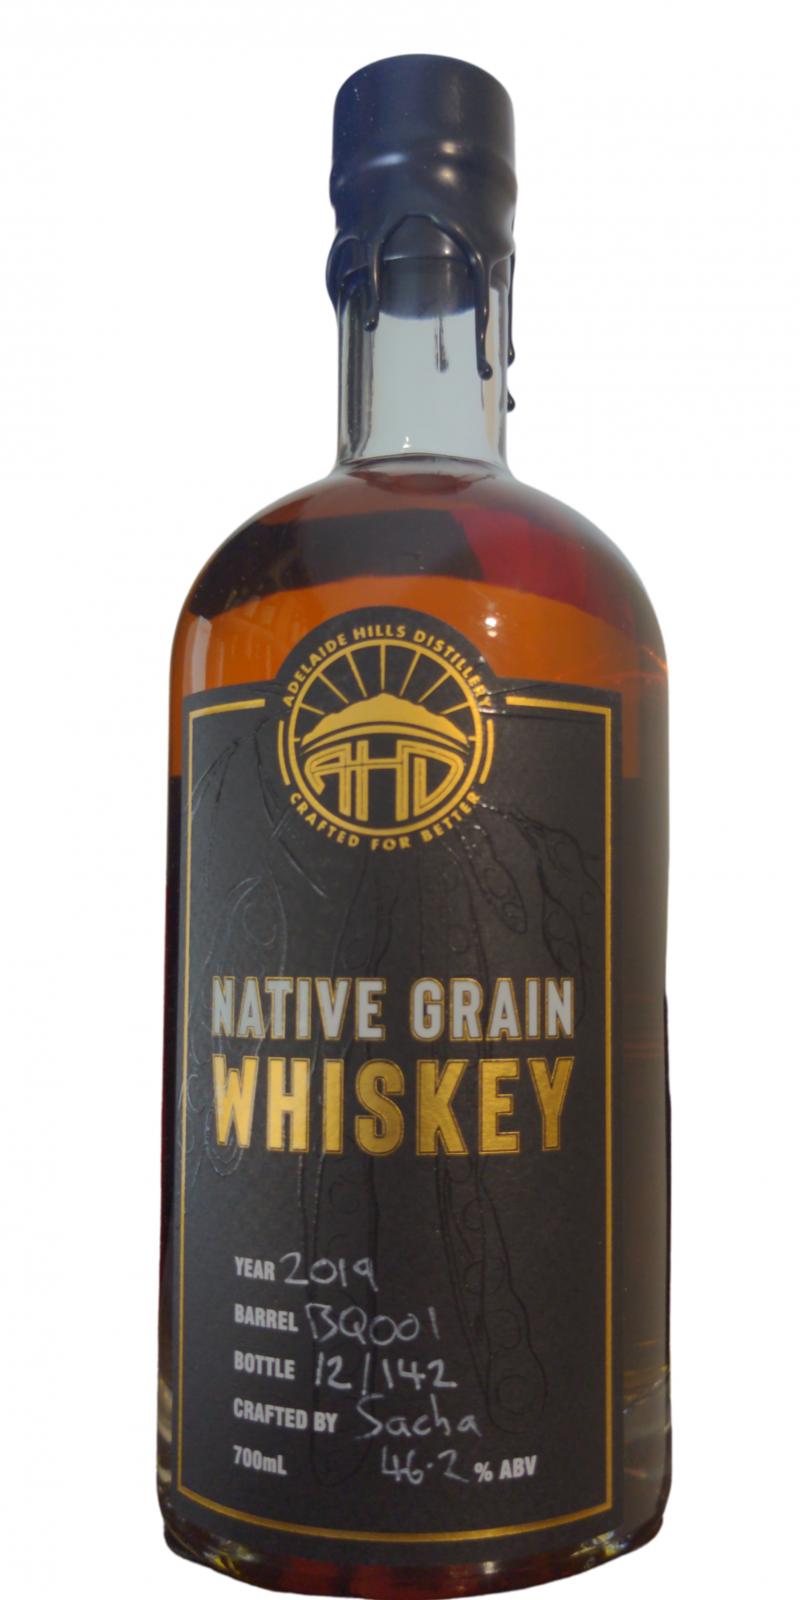 Adelaide Hills Native Grain Whiskey